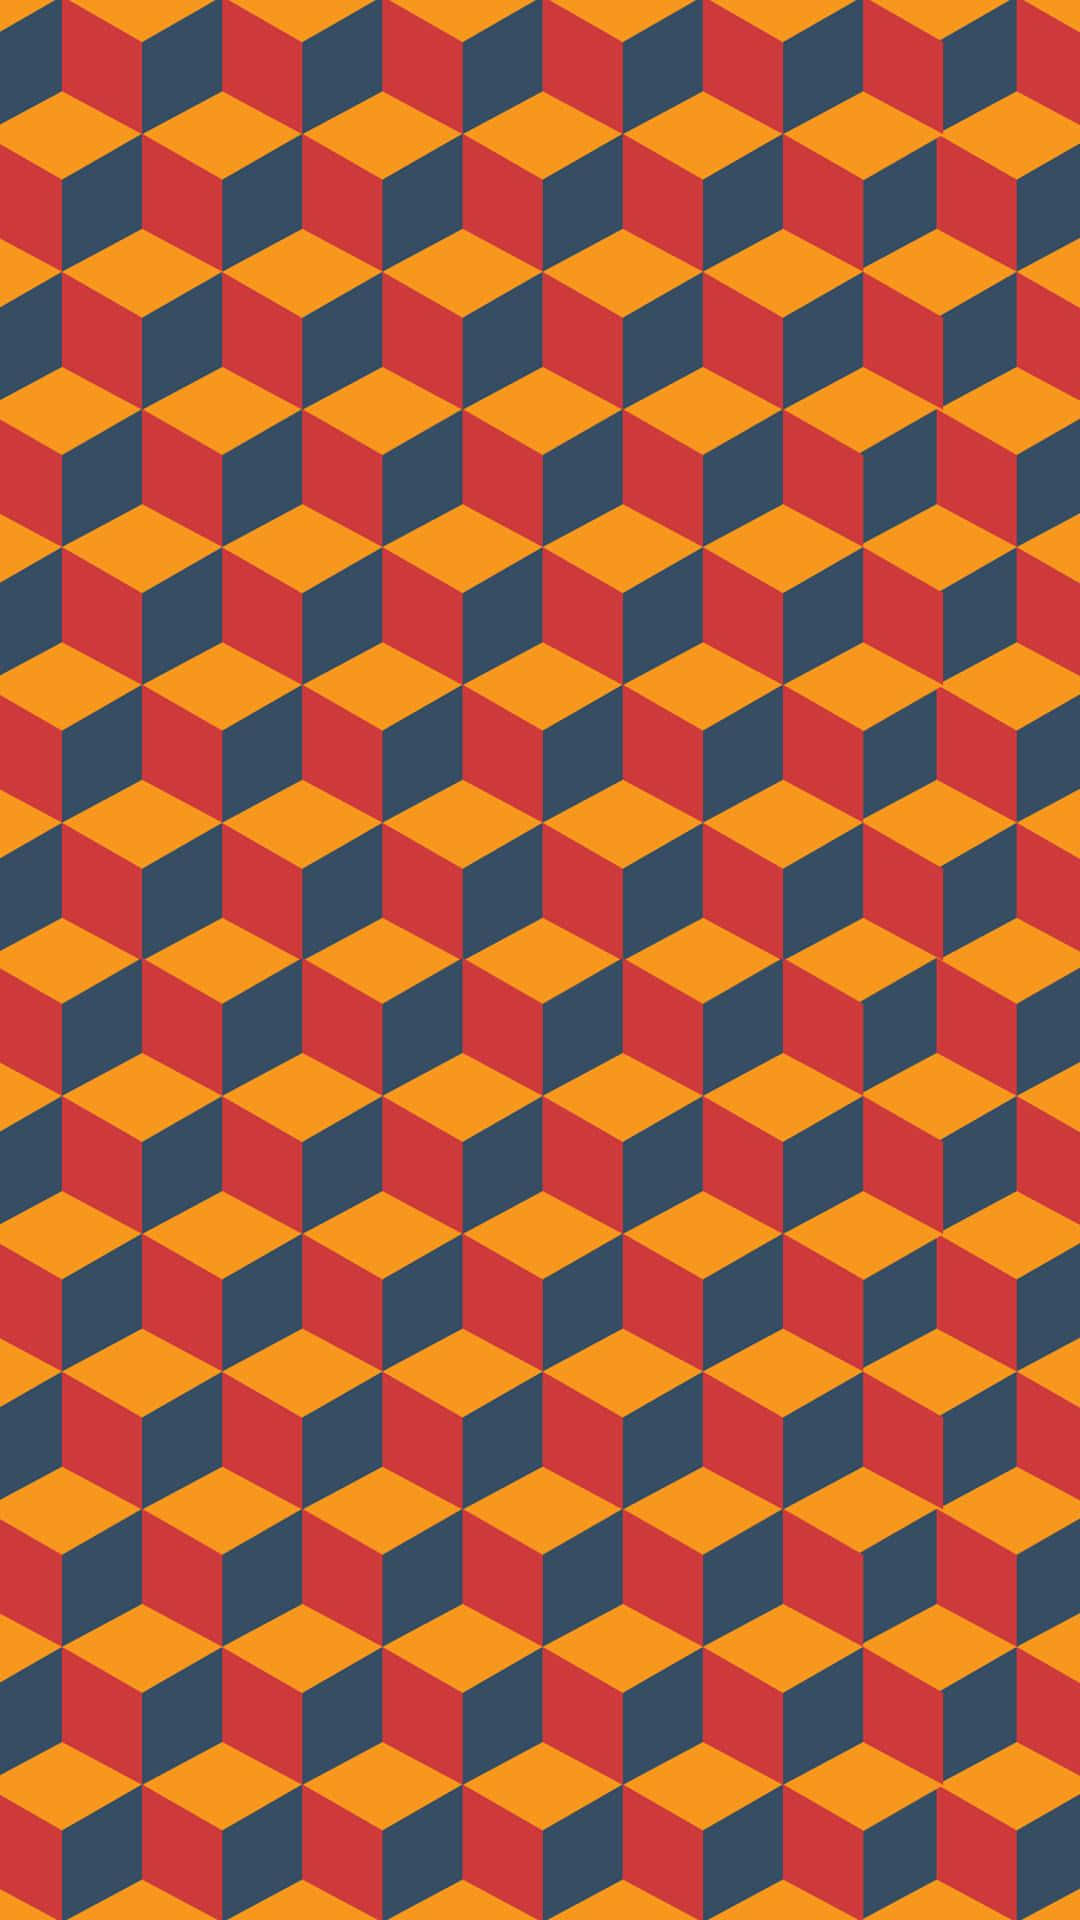 Engeometrisk Mönster Med Orange Och Blåa Rutor Wallpaper